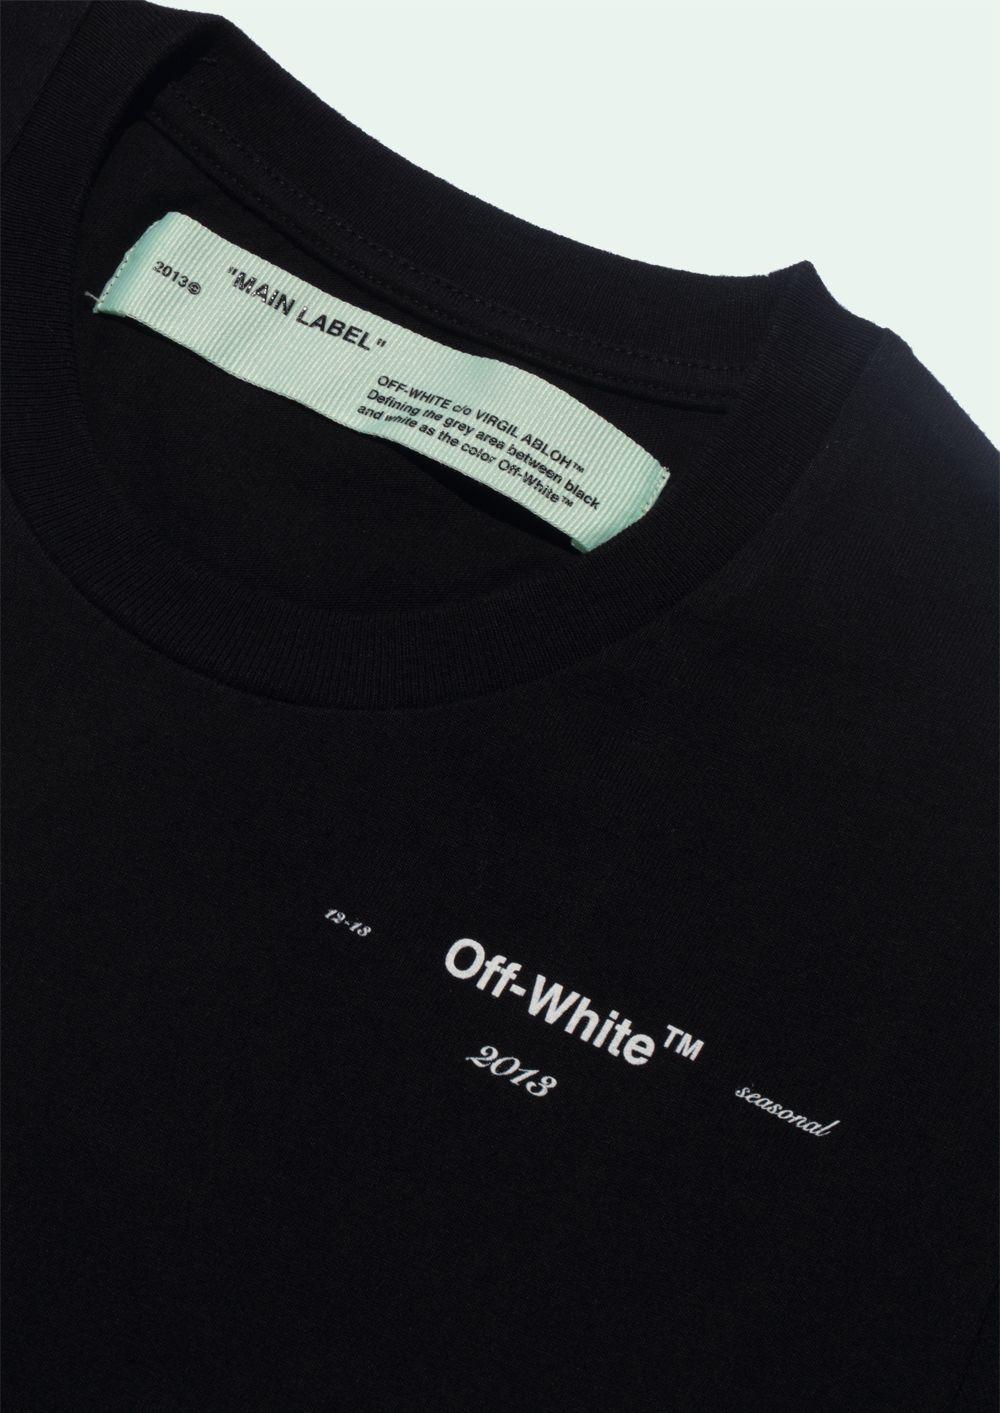 Off White 13 Logo - OFF WHITE - T-Shirt S/S - OffWhite